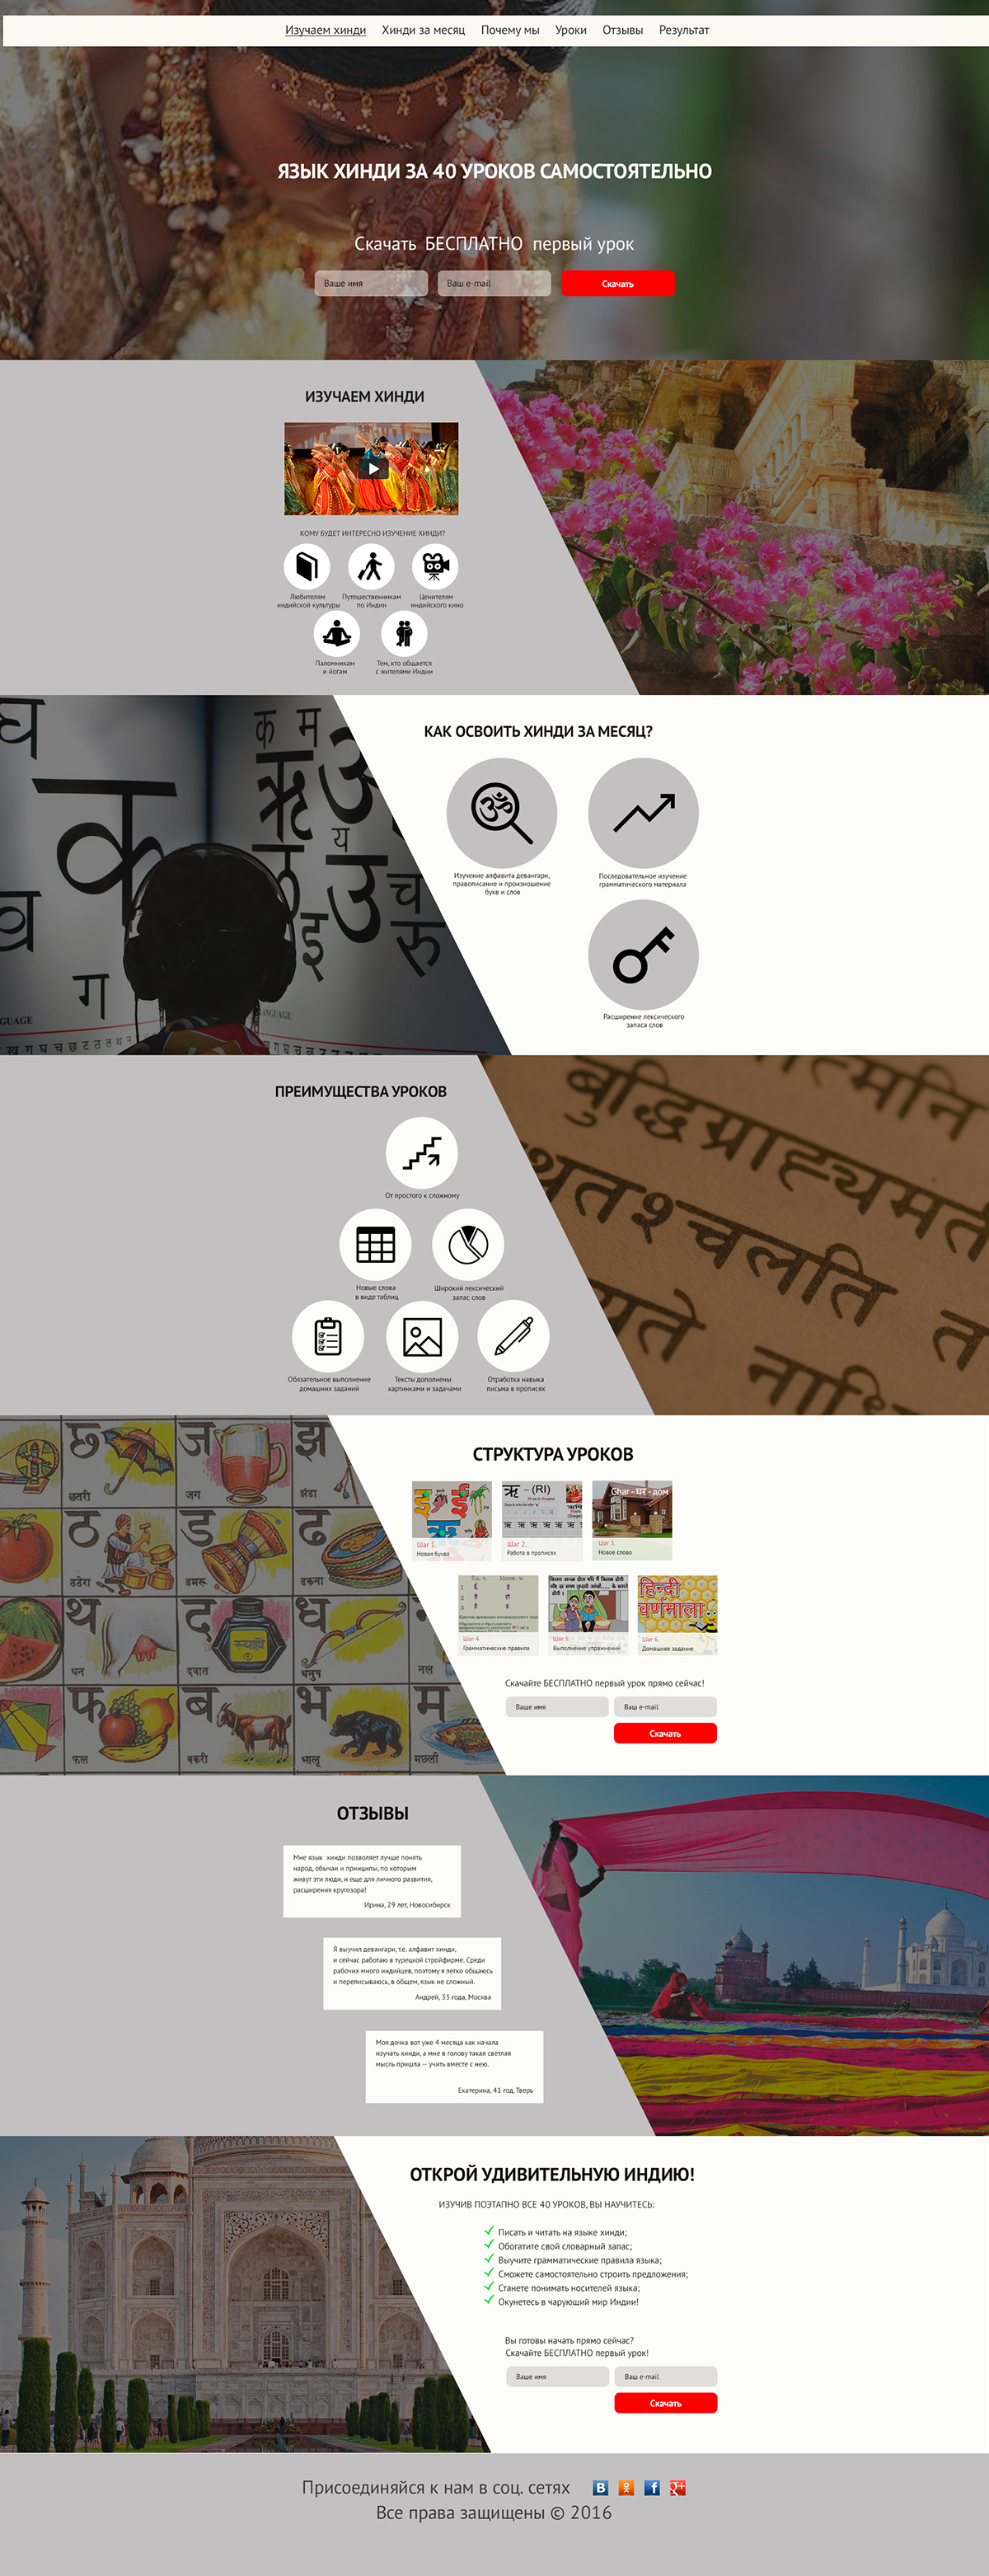 лендинг хинди дизайн landing page